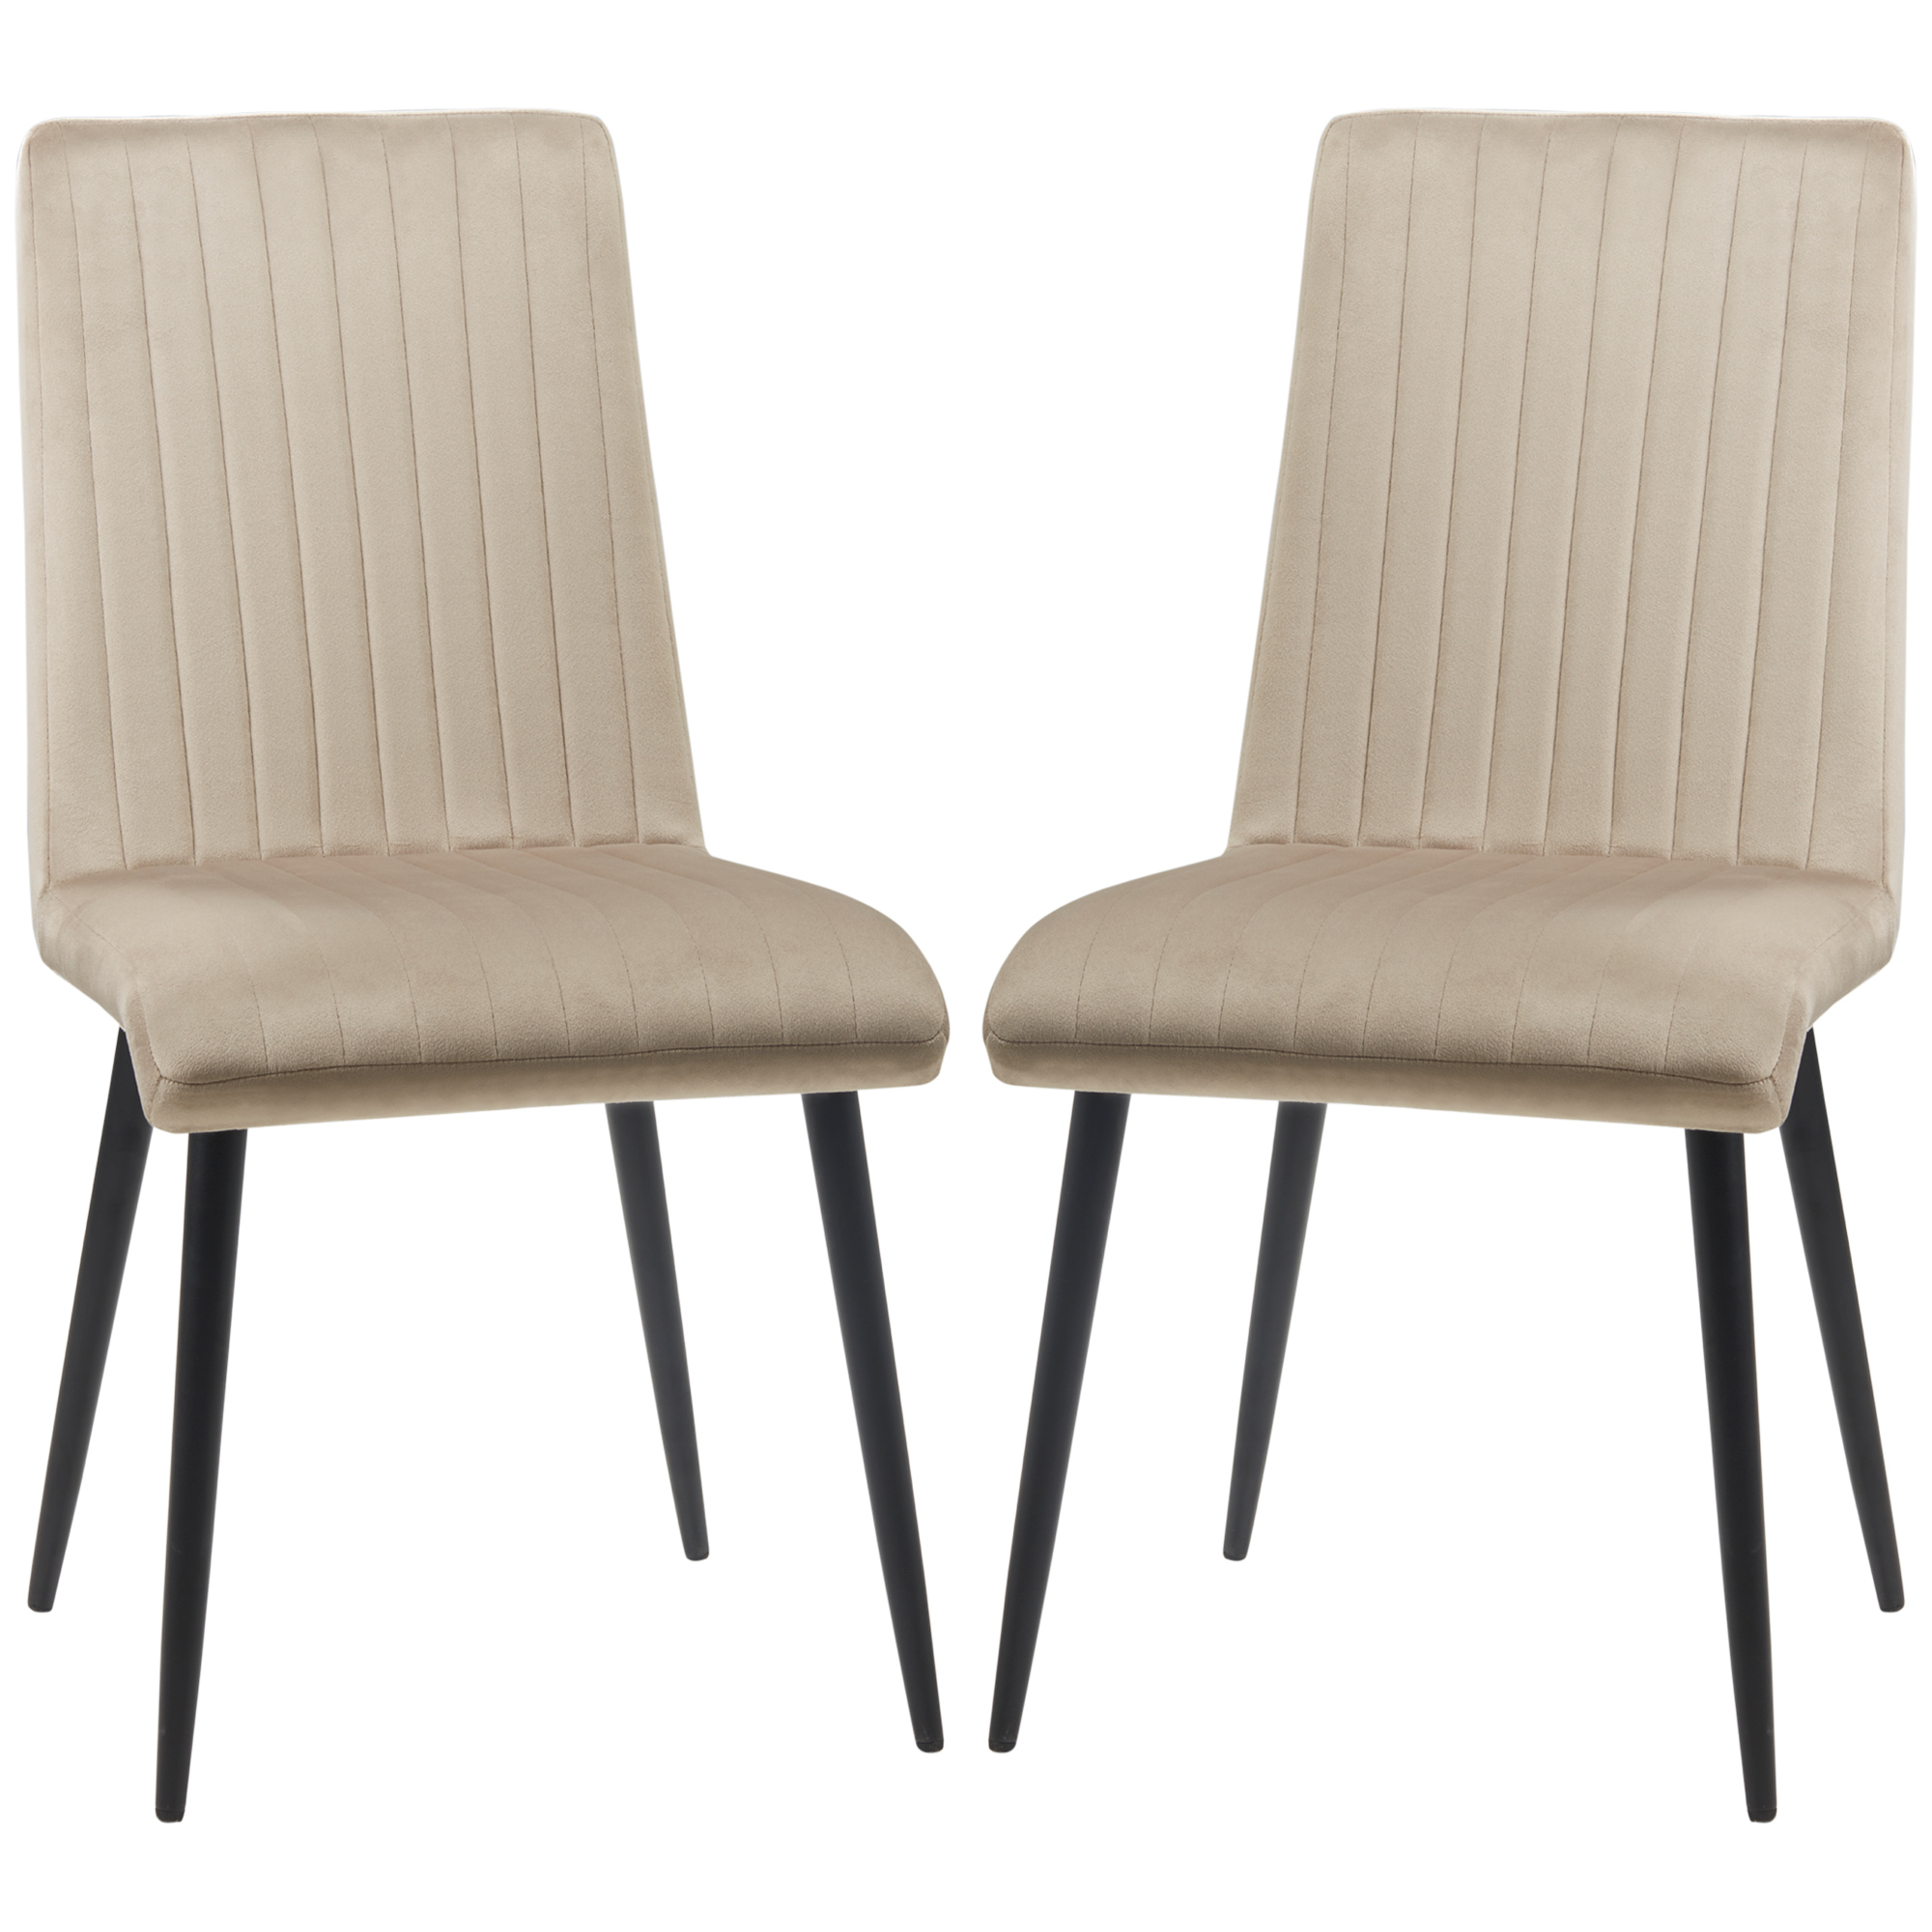 Σετ HOMCOM με 2 επικαλυμμένες καρέκλες κουζίνας με ατσάλινα πόδια και σχέδιο που εξοικονομεί χώρο